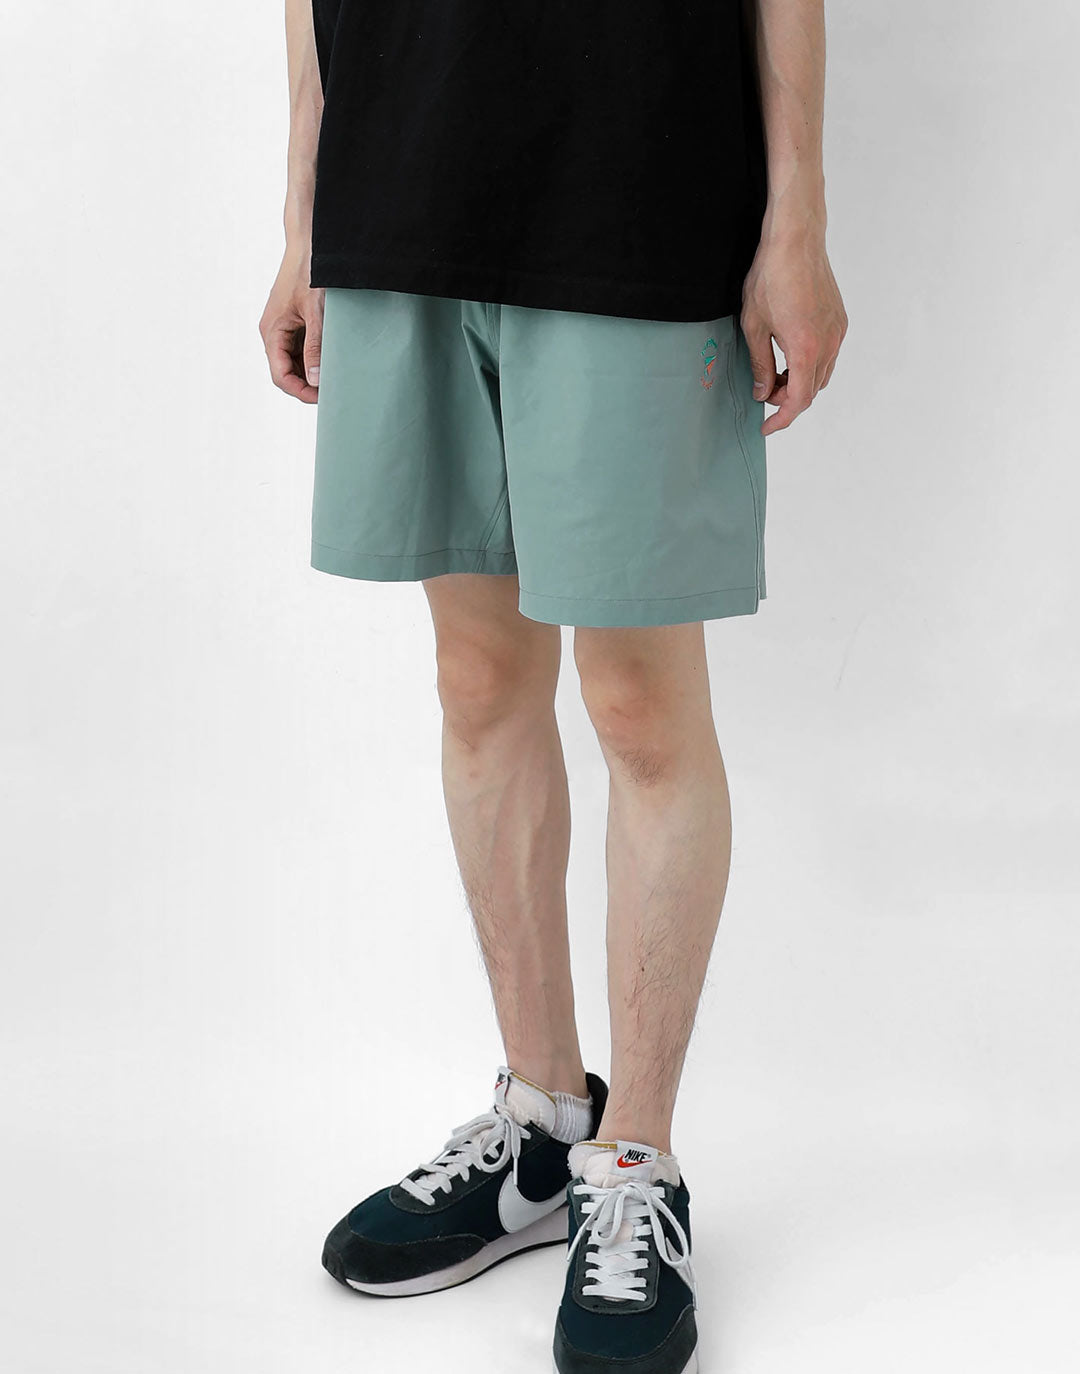 Suruga Bay Shorts